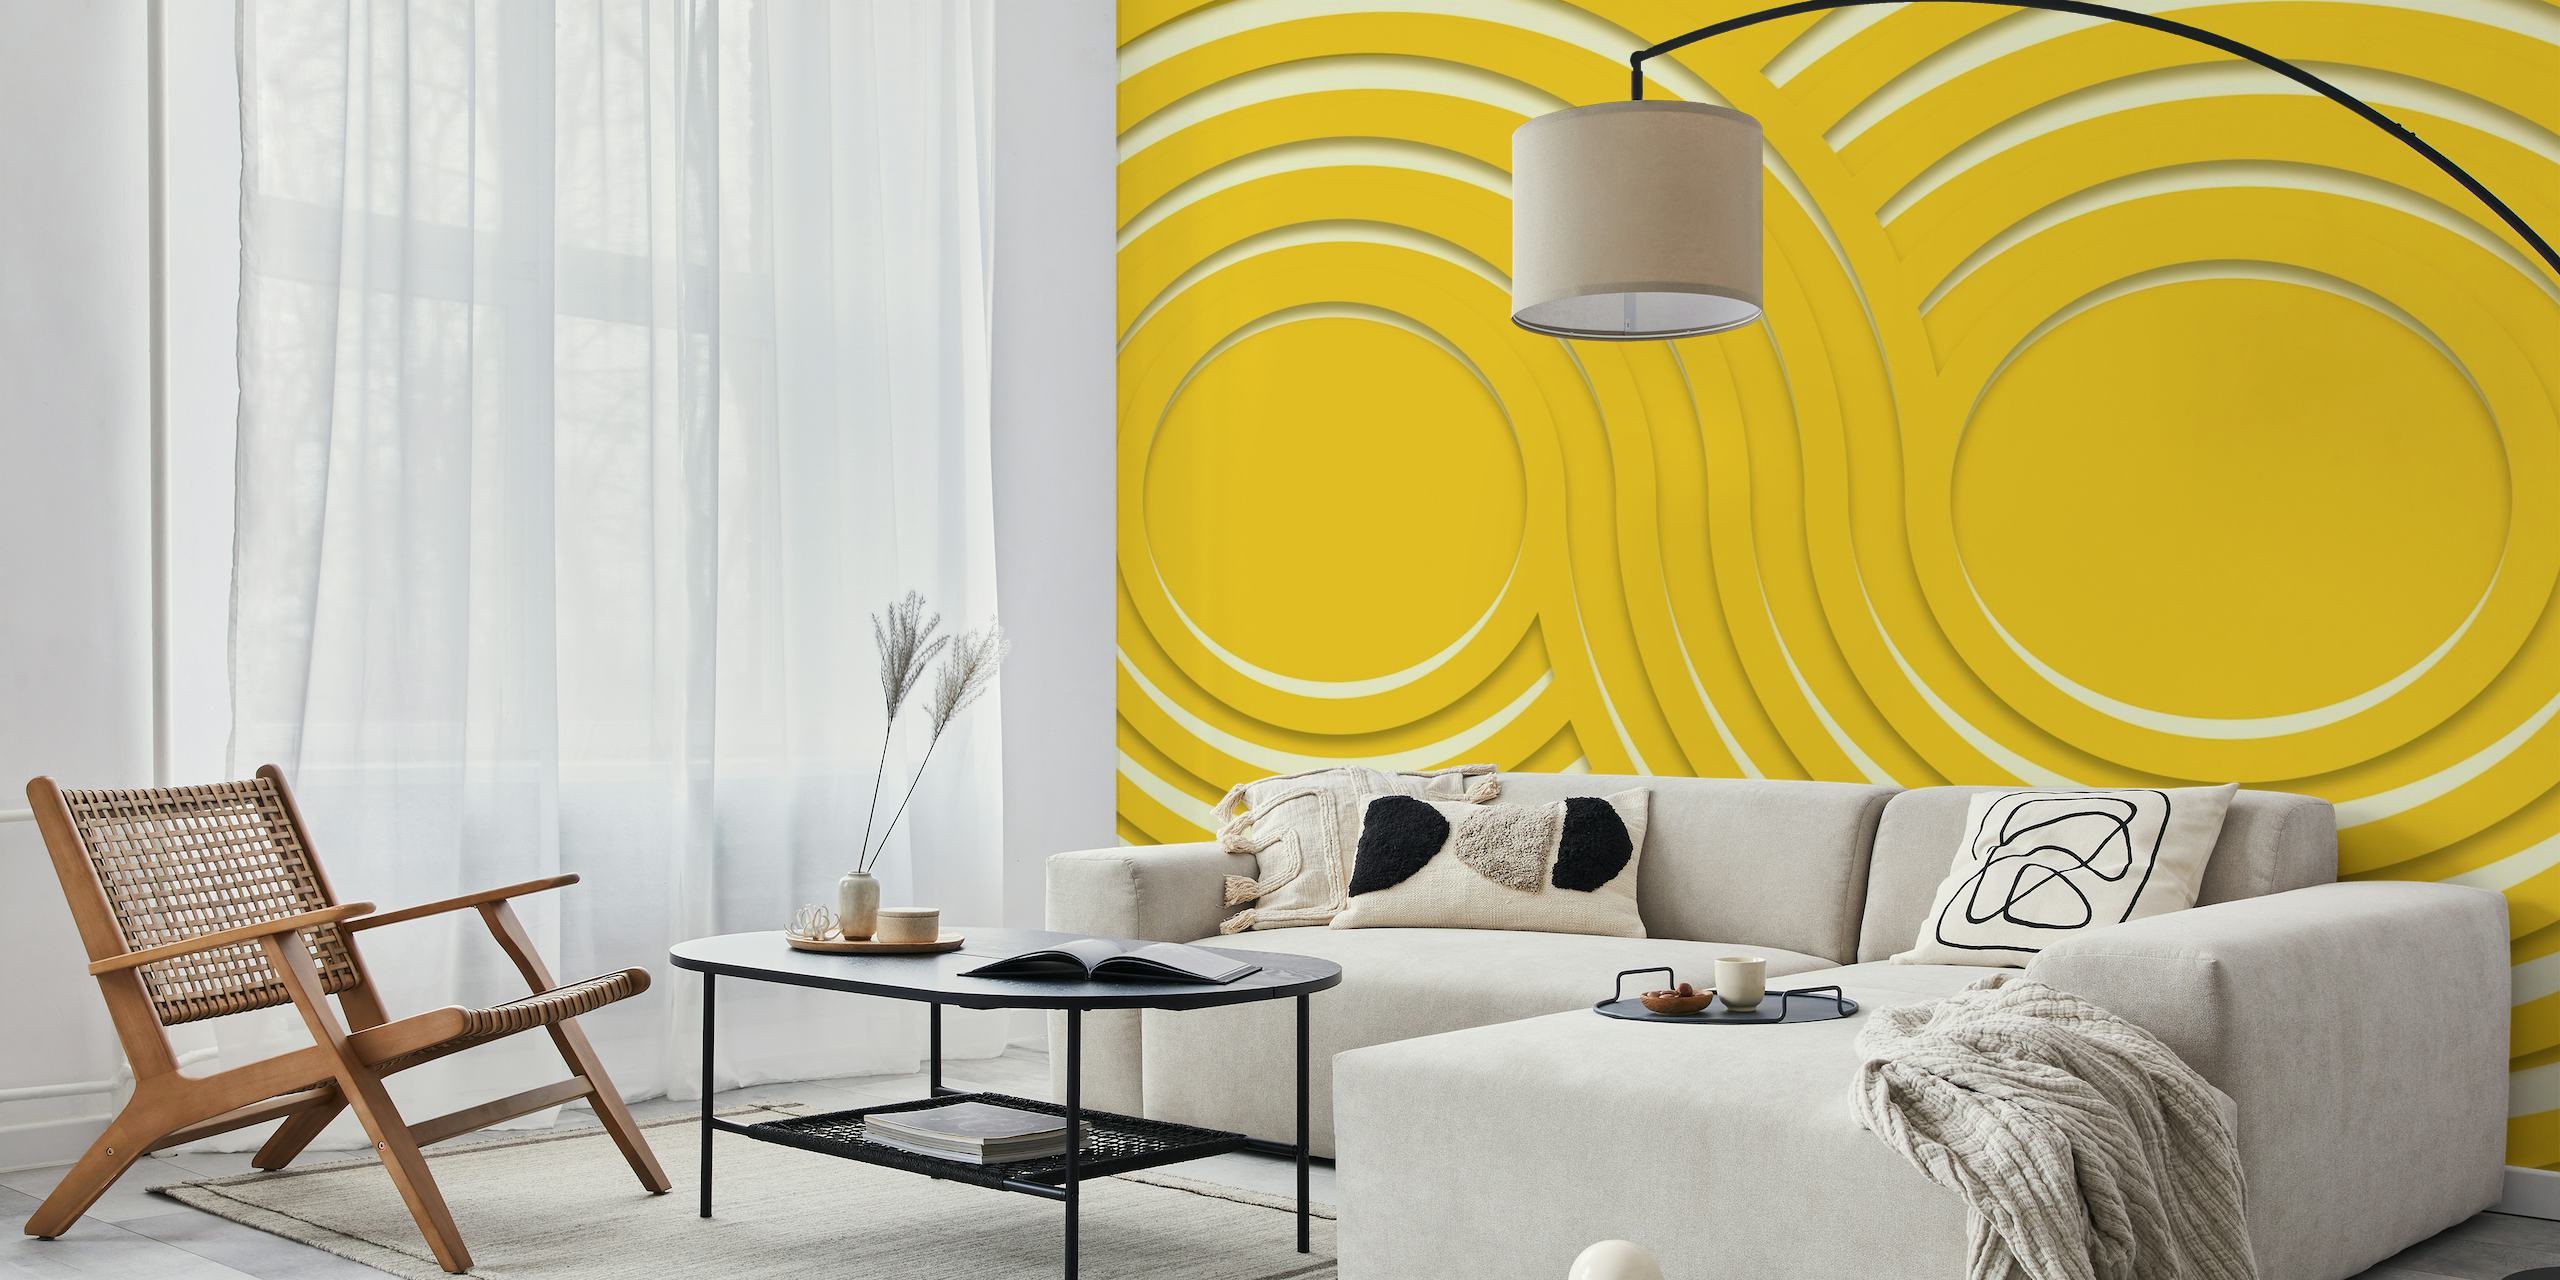 Bauhausin inspiroima vuosisadan puolivälin moderni seinämaalaus, jossa on keltainen aaltoileva aaltokuvio.